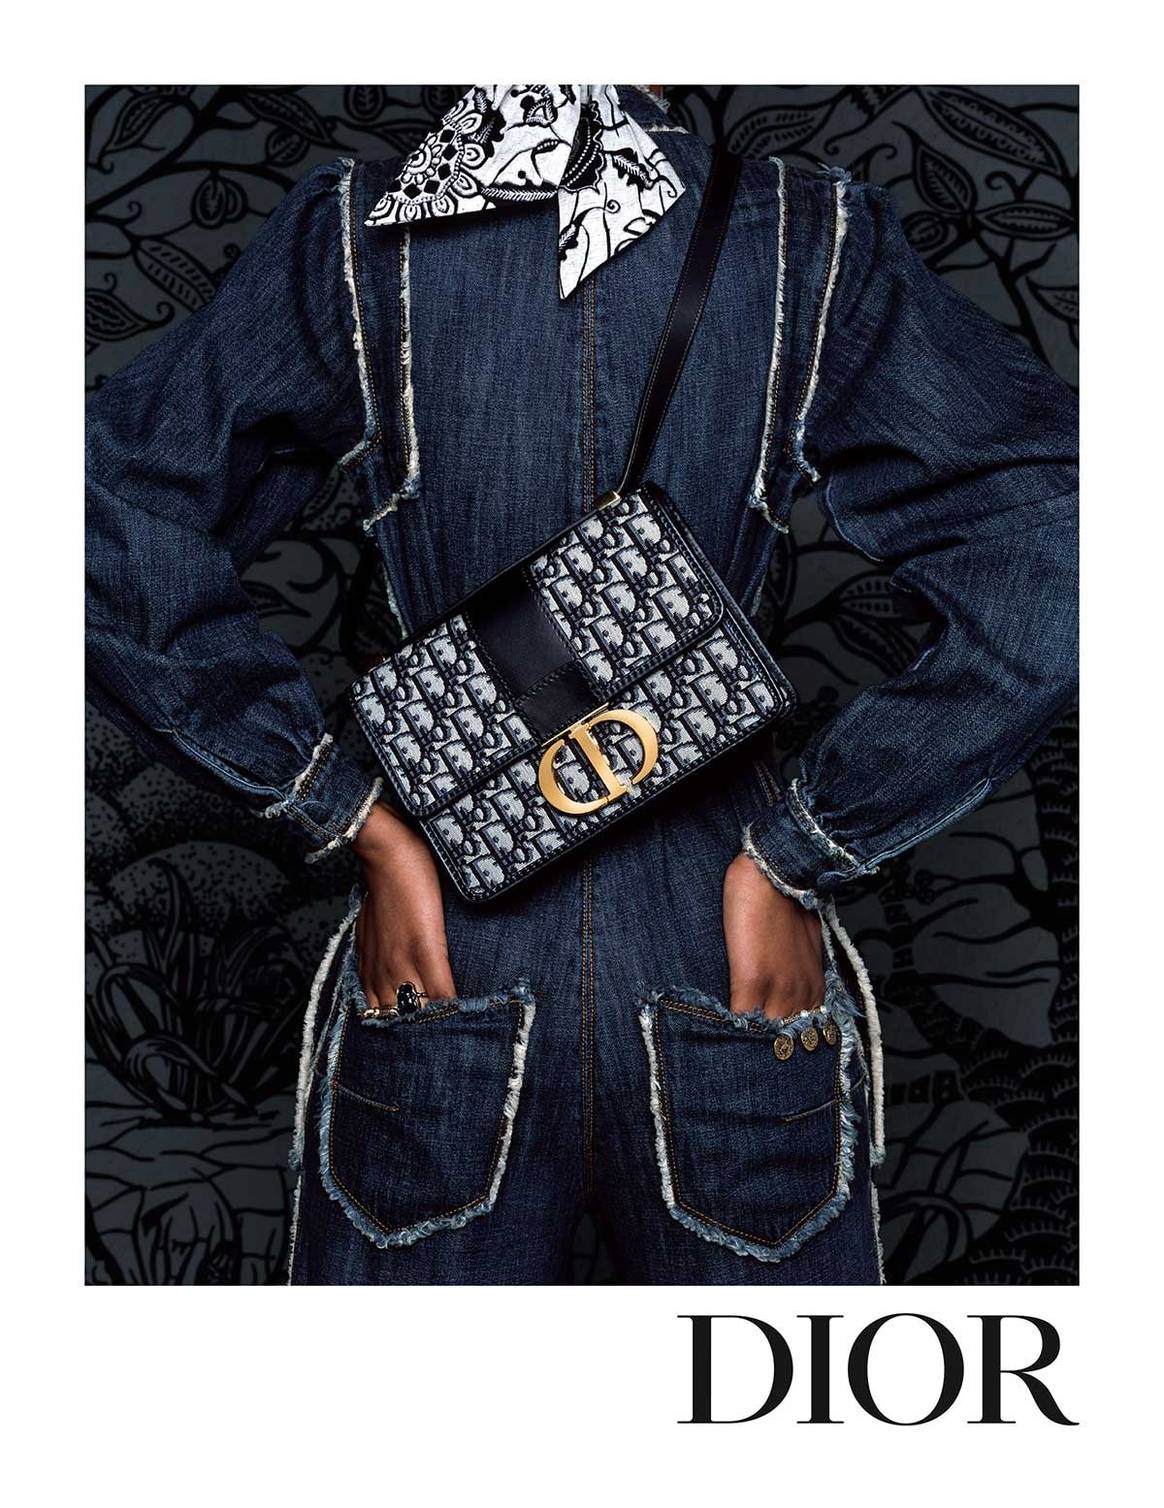 Dior présente sa campagne croisière 2020